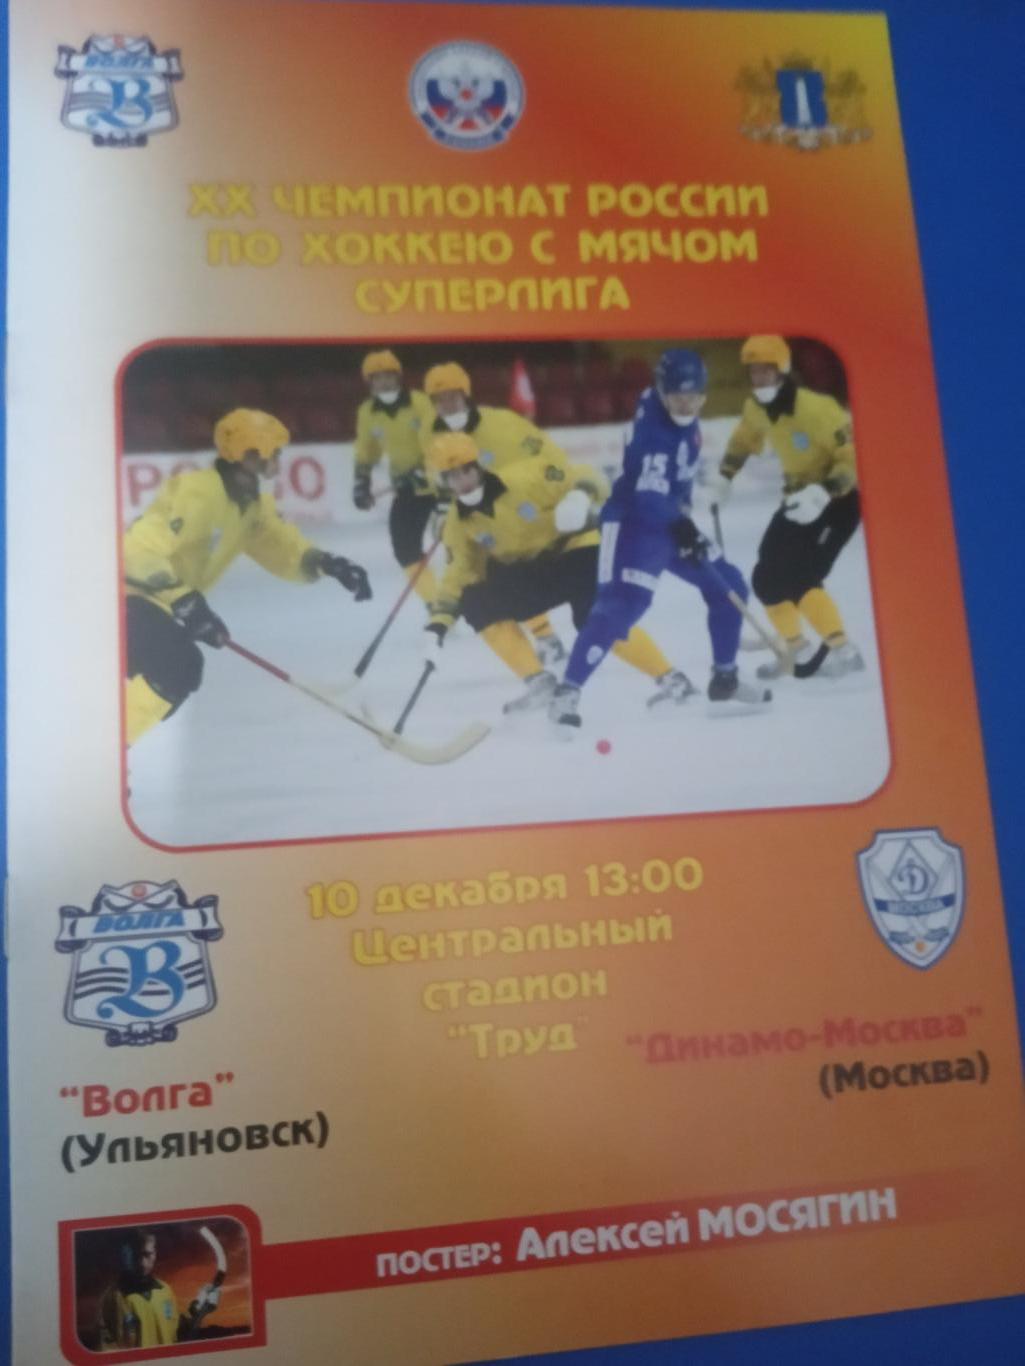 Волга Ульяновск - Динамо Москва 10 декабря 2011